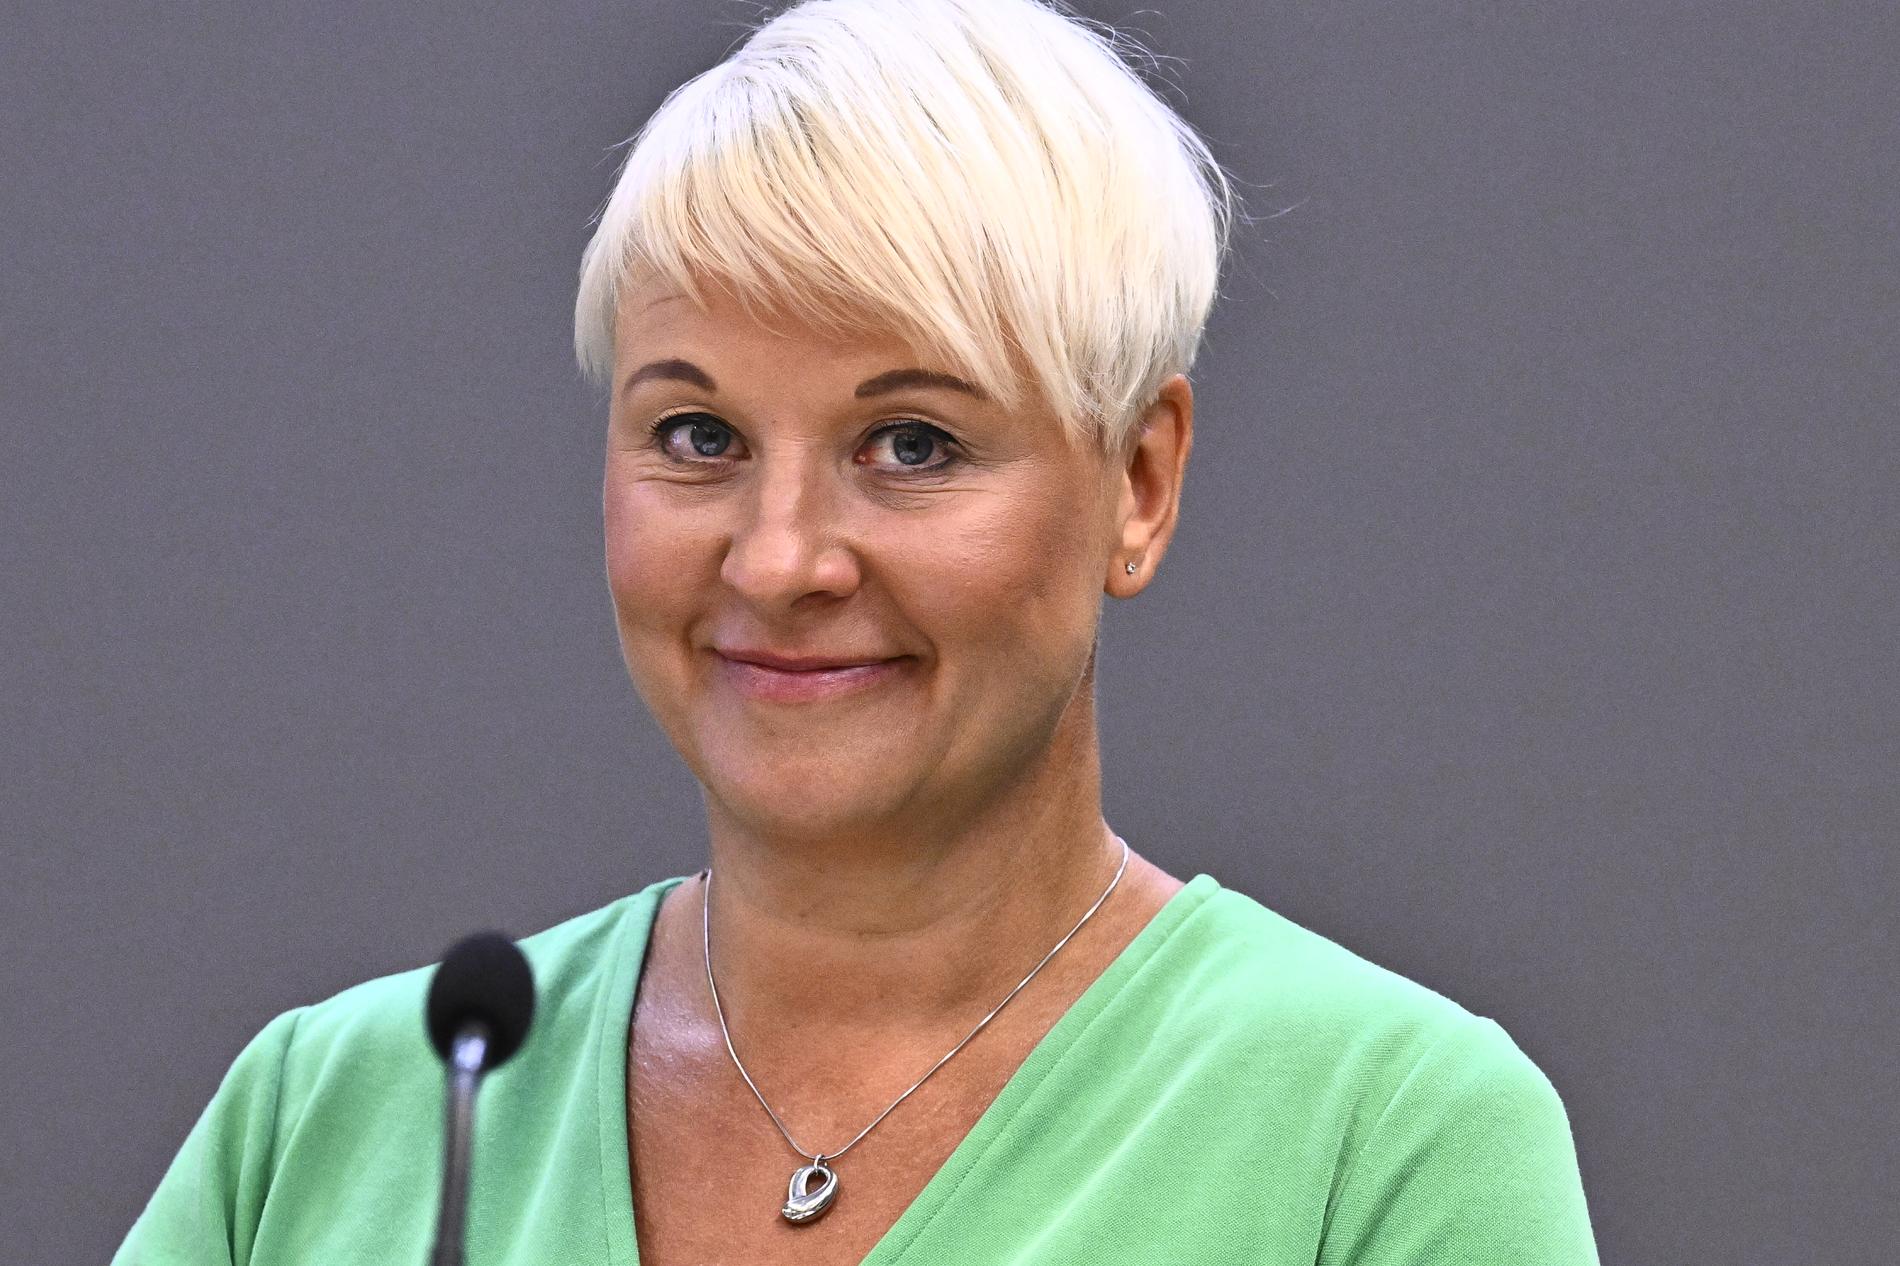 Äldre- och socialförsäkringsminister Anna Tenje (M) planerar infomöten om riksdagens pensionsgrupp och ett slags trohetslöfte från SD, MP och V om de ska få vara med i gruppen som sätter ramarna för det system som styr svenskarnas pensioner. Arkivbild.